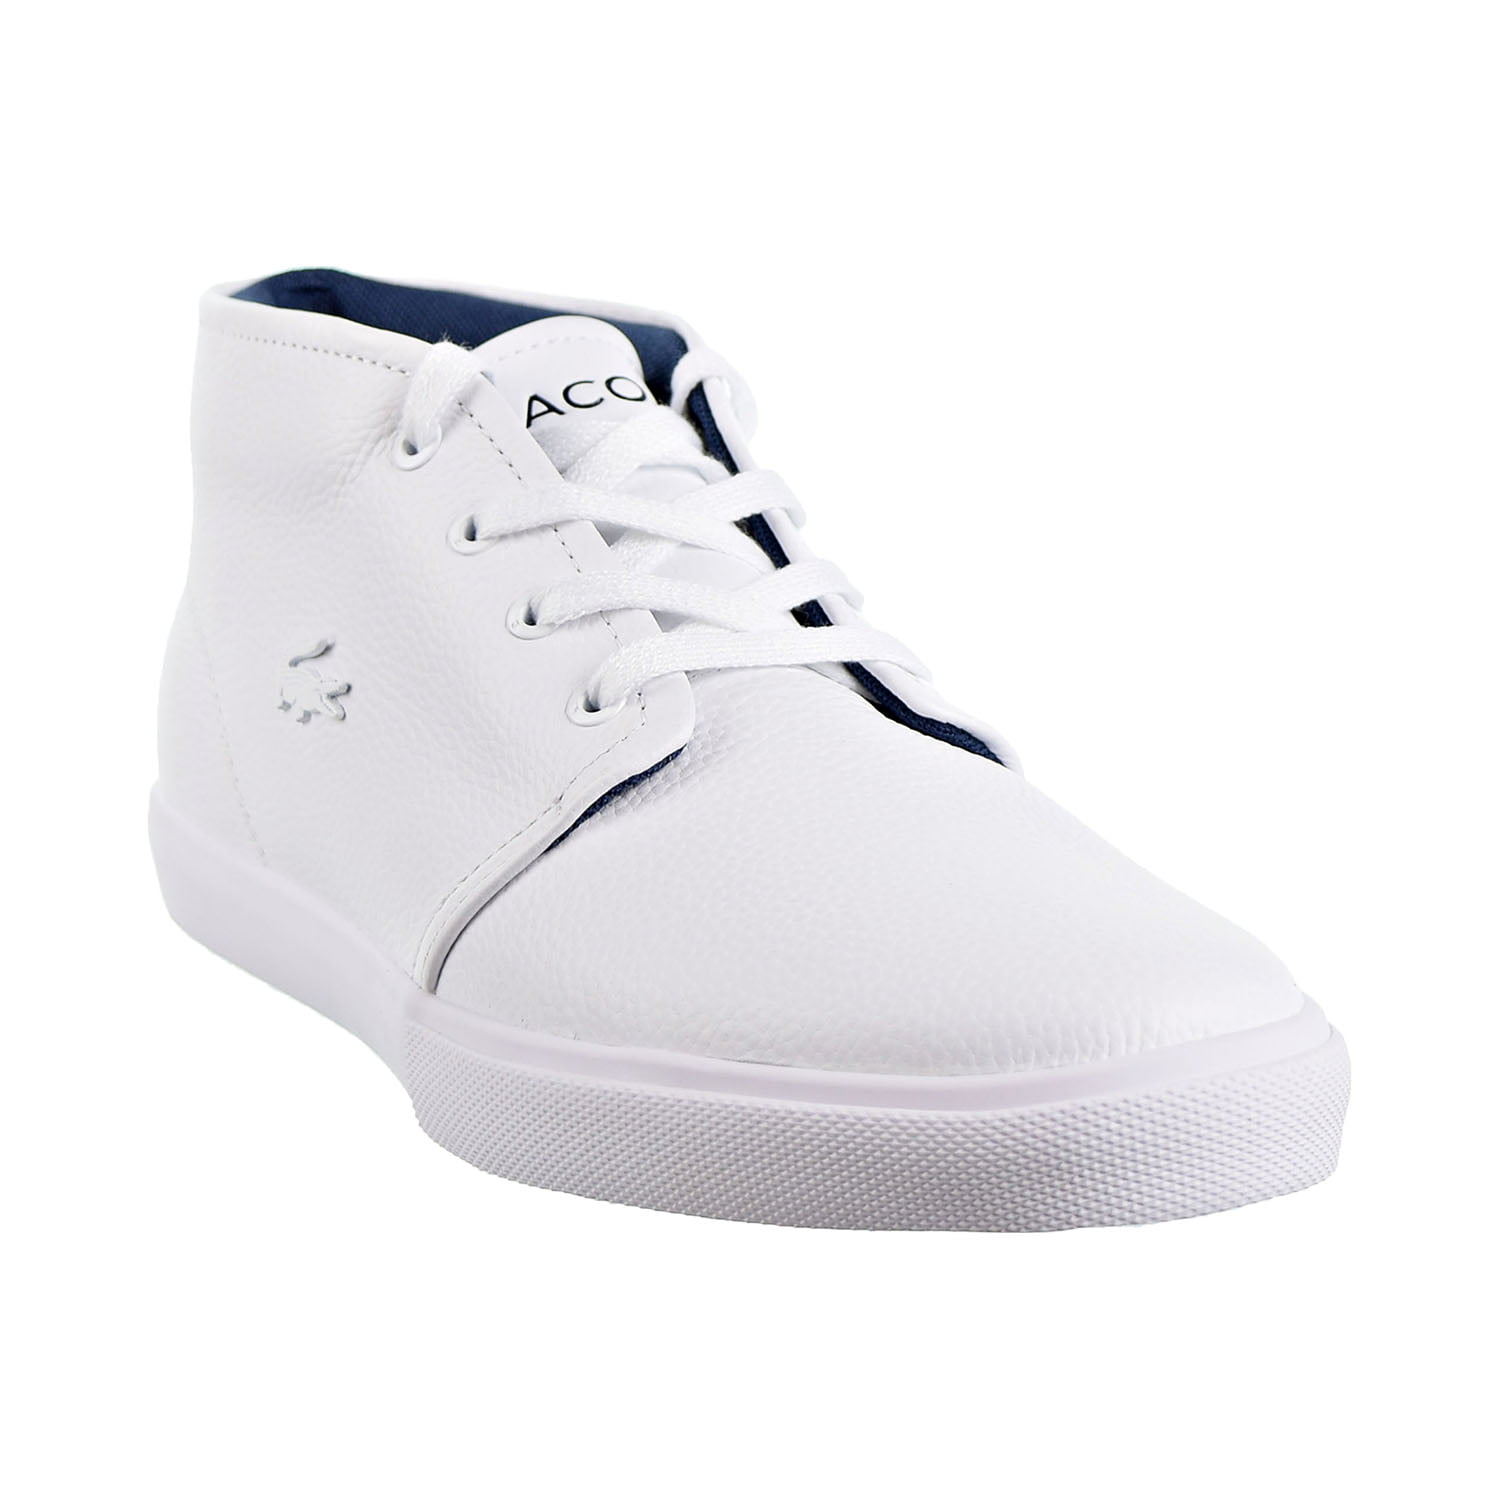 Lacoste Asparta 318 1 P Cam Men's Shoes 